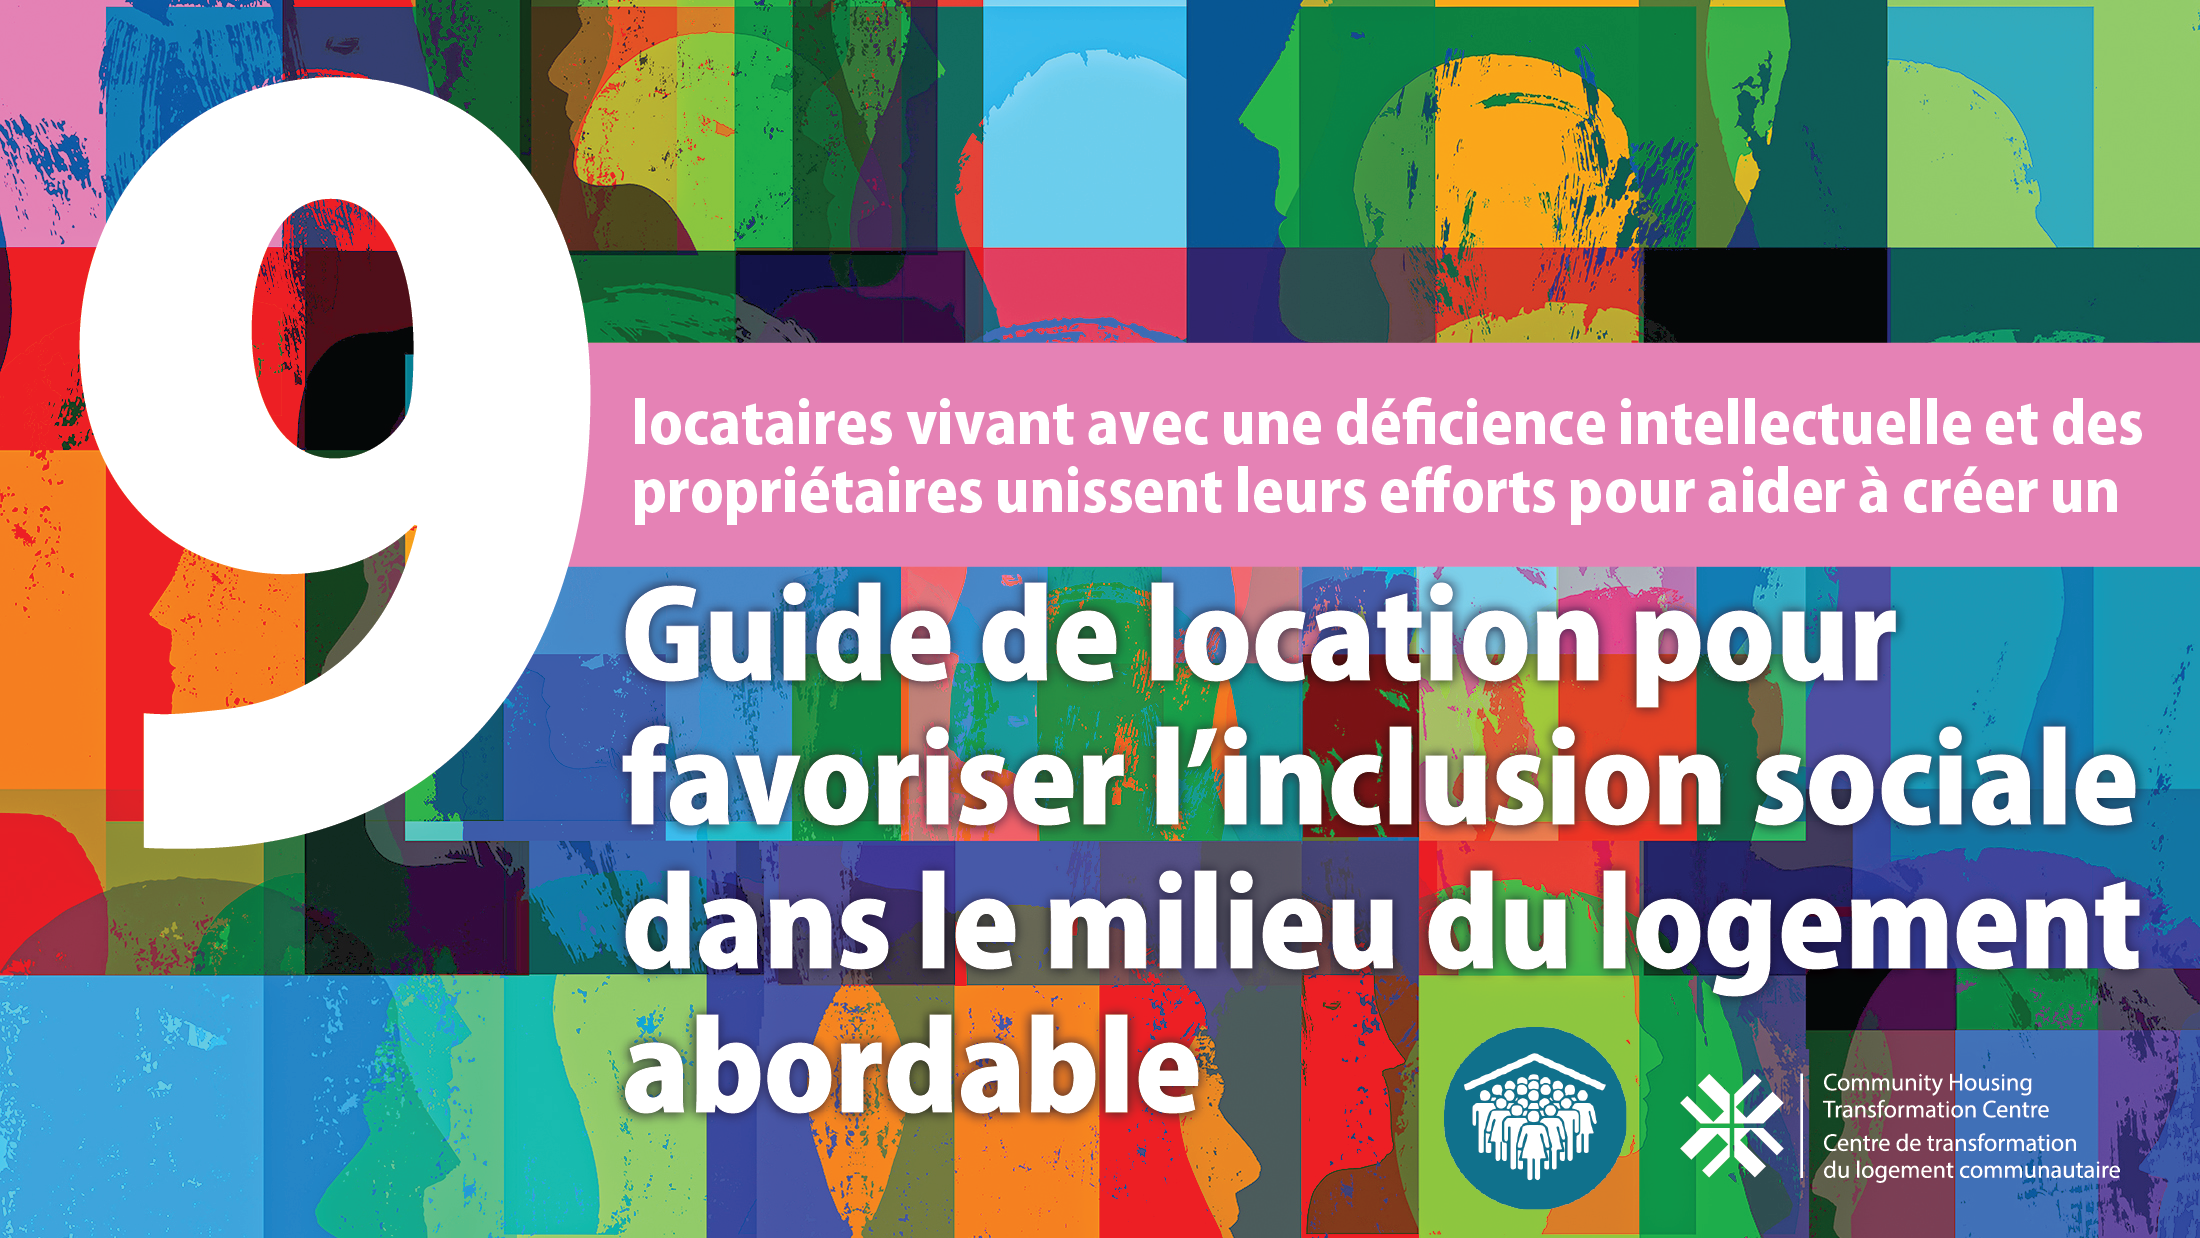 Guide de location pour favoriser l’inclusion sociale dans le milieu du logement abordable